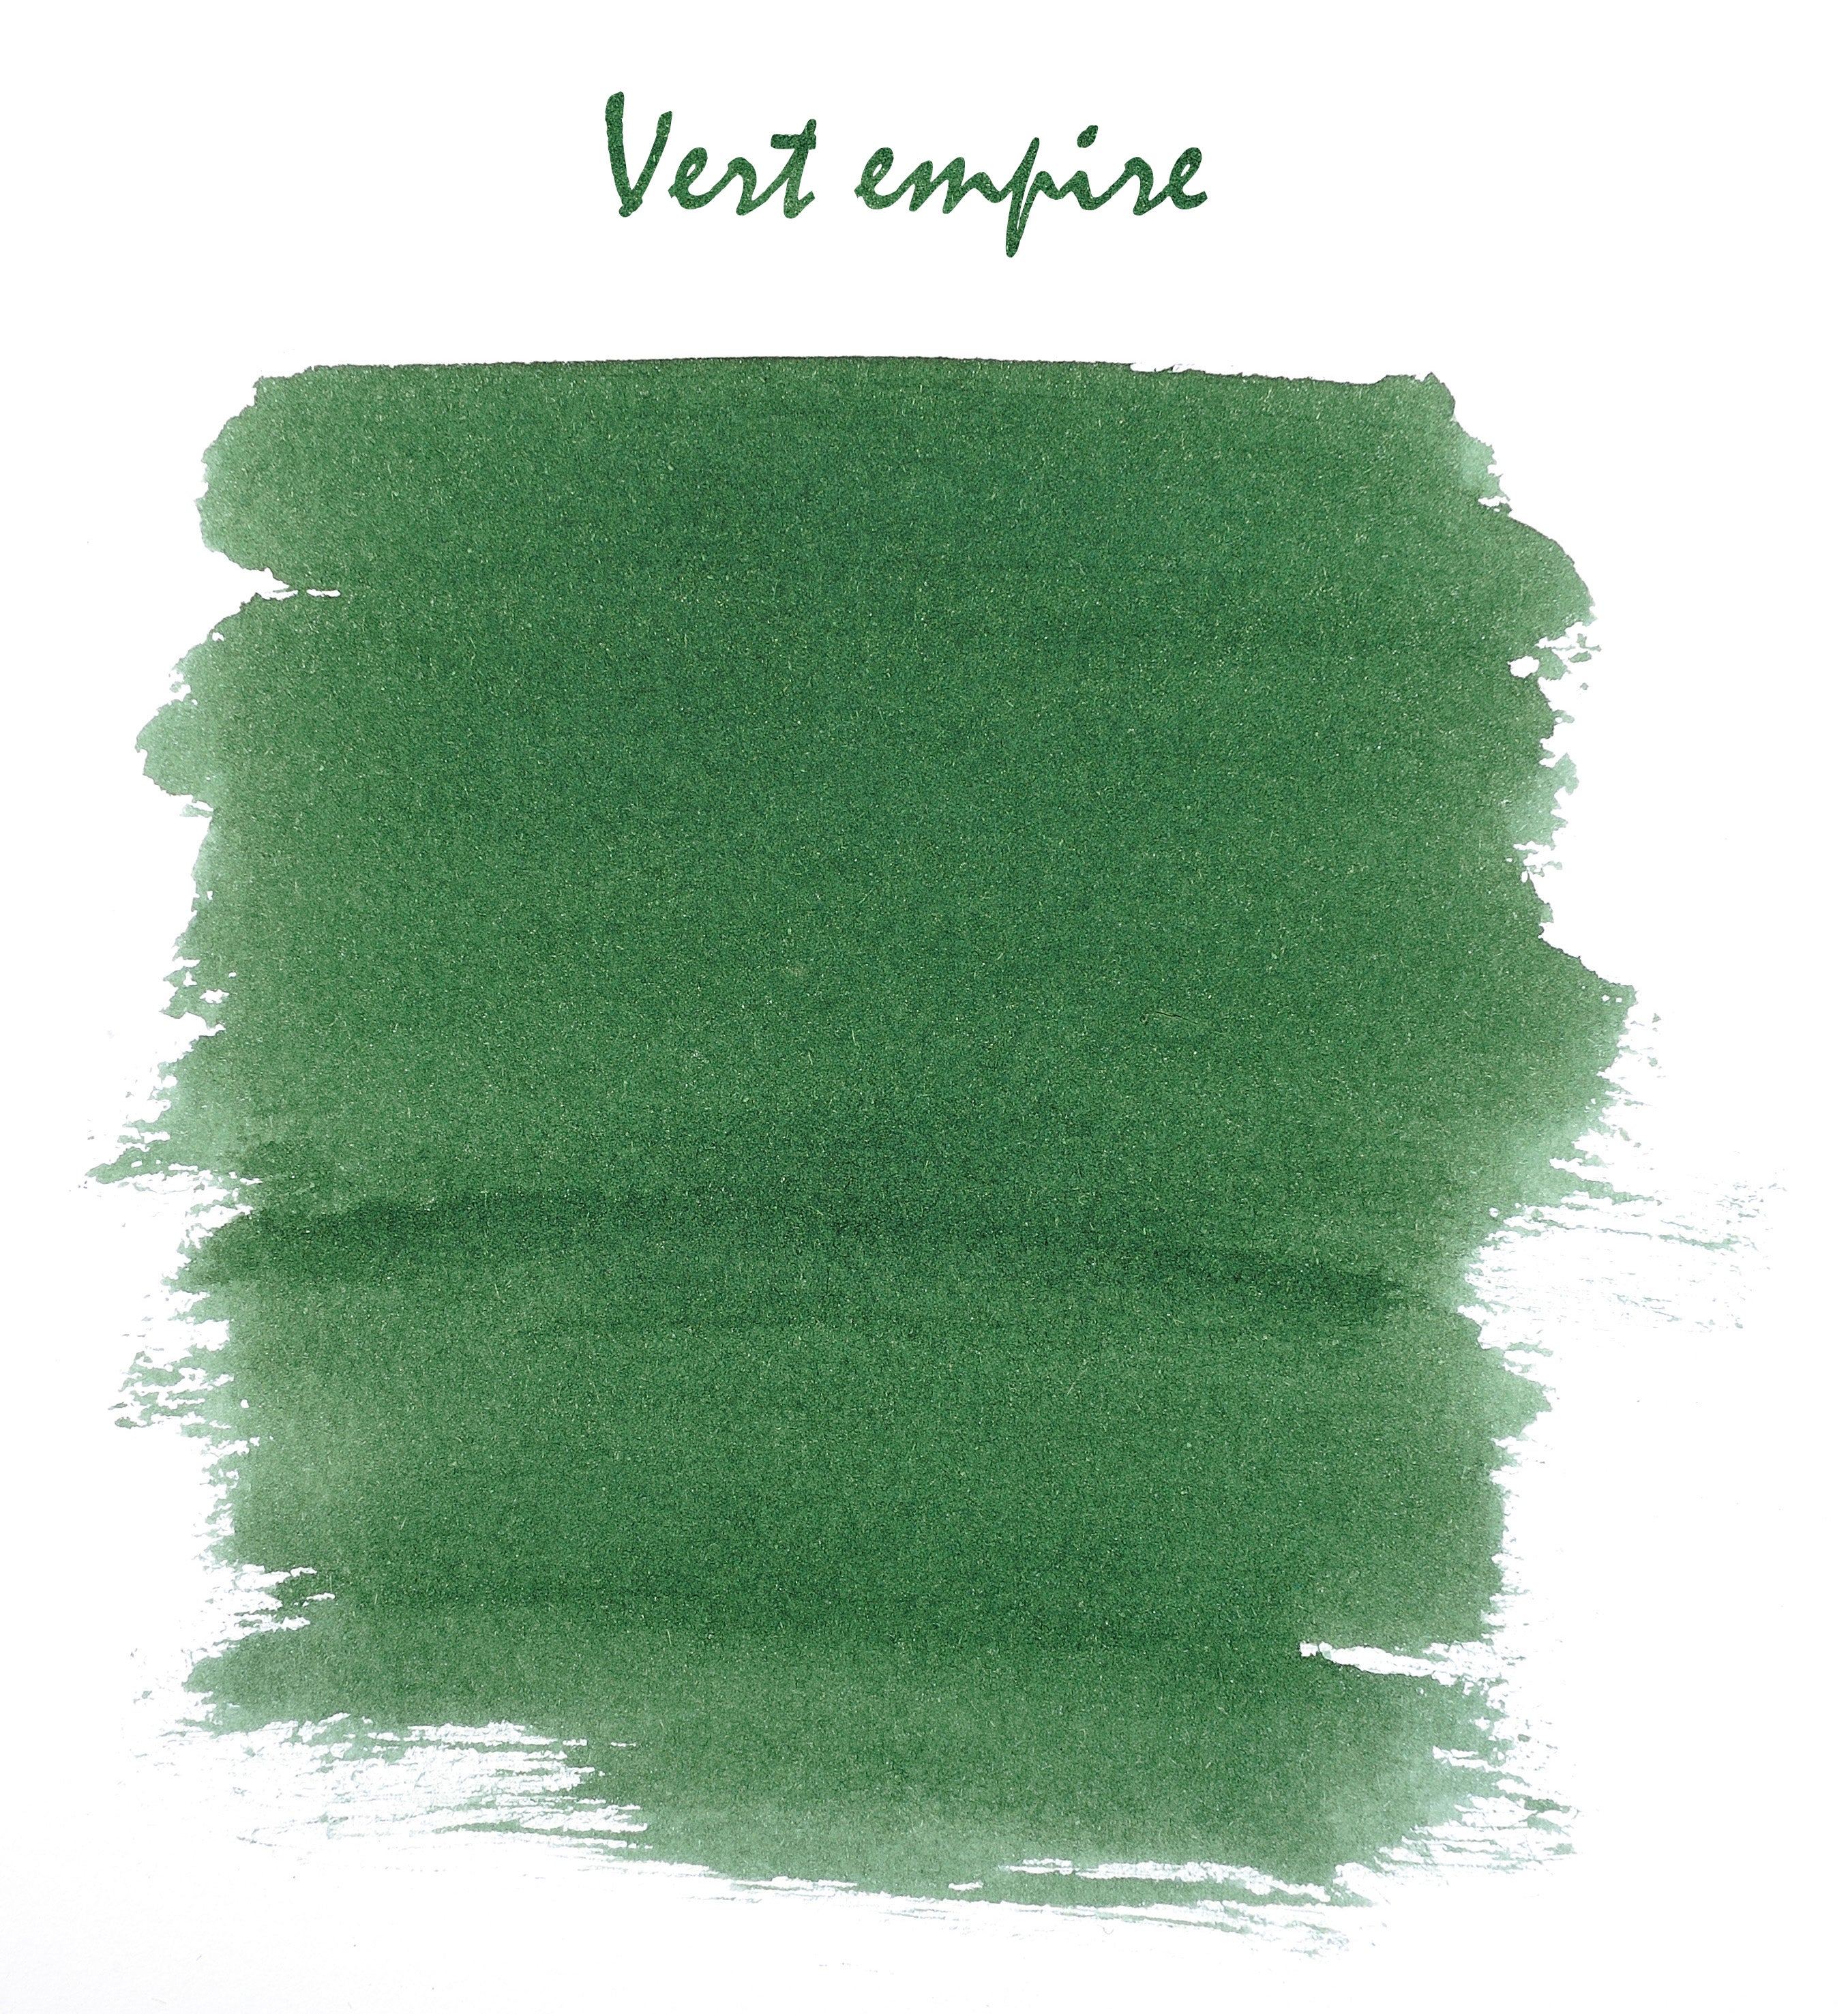 Herbin ink bottle laurel green 10 ml / vert empire